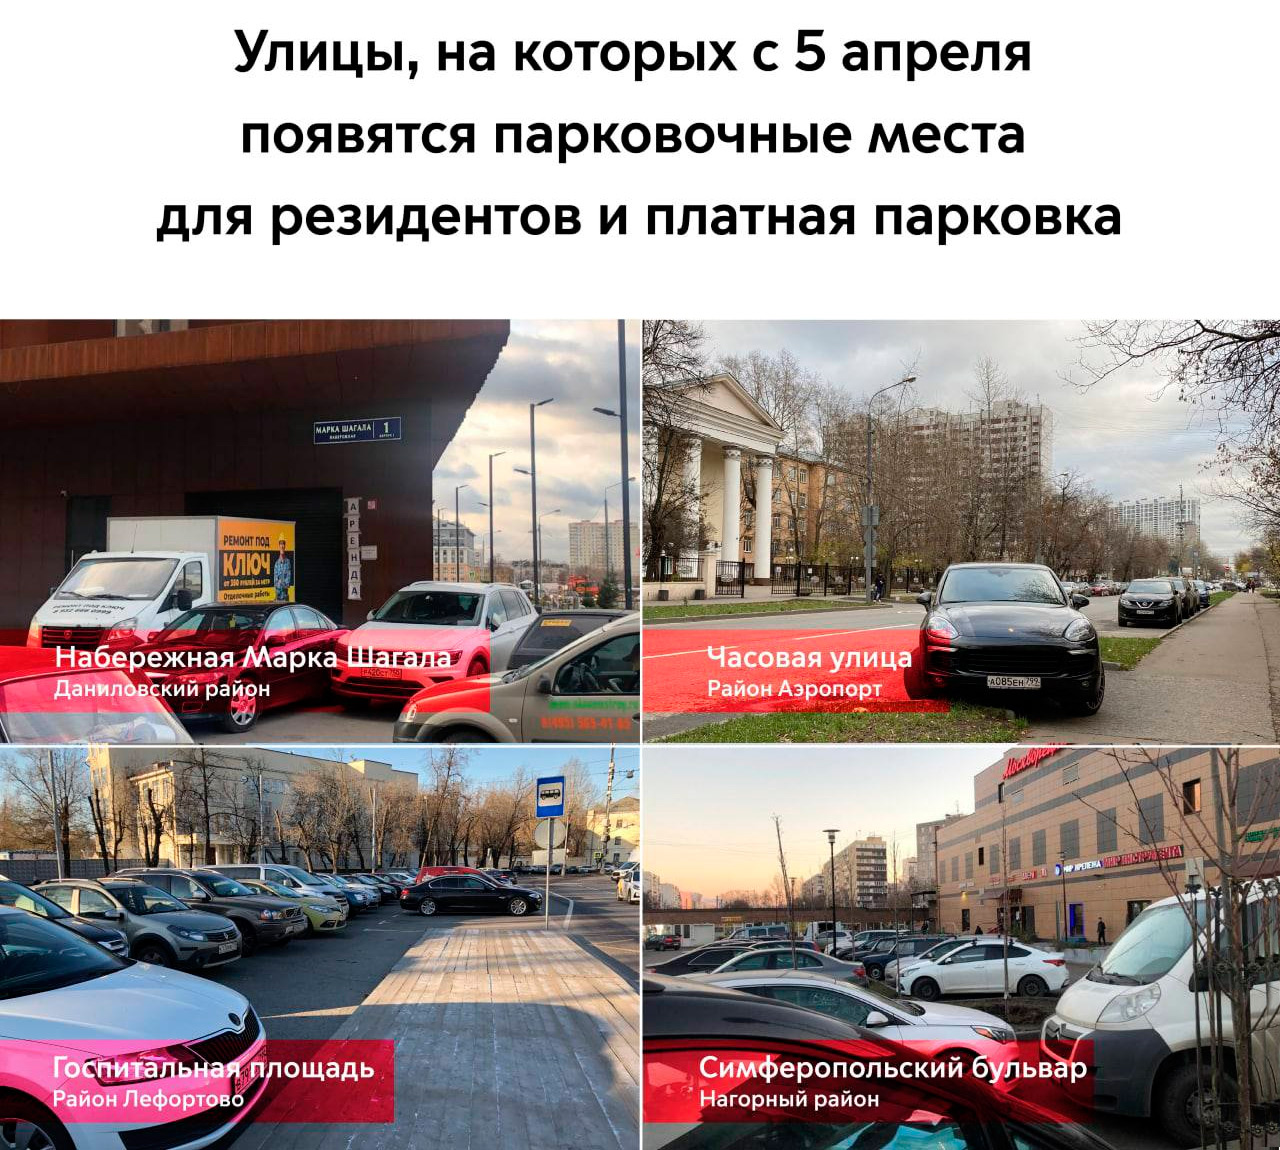 Новые правила парковки в Москве: цены, улицы и все нюансы